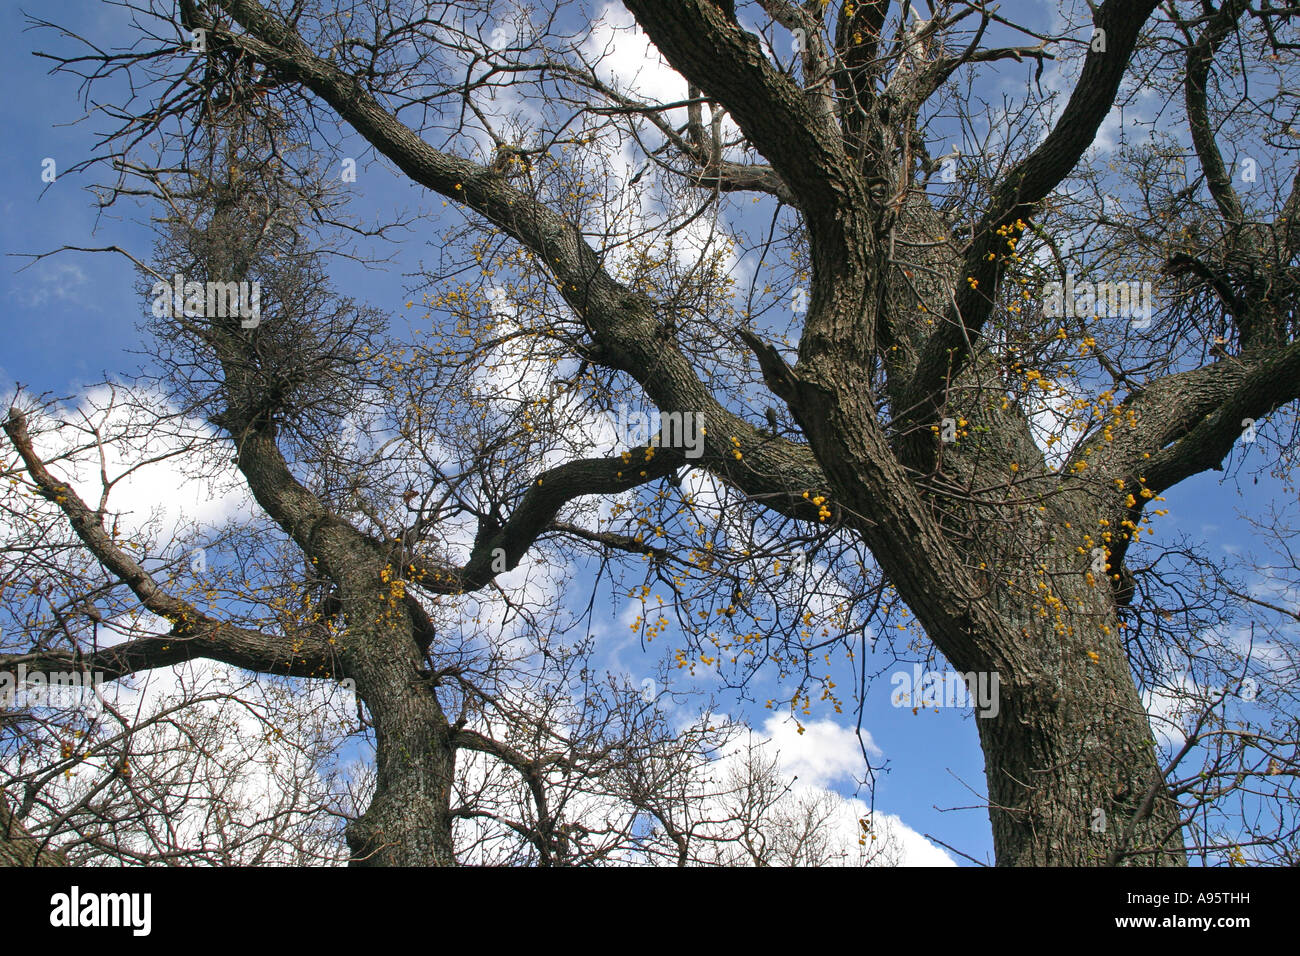 Loranthus europaeus, European yellow mistletoe, Summer mistletoe, fruits on a tree, Bulgaria Stock Photo